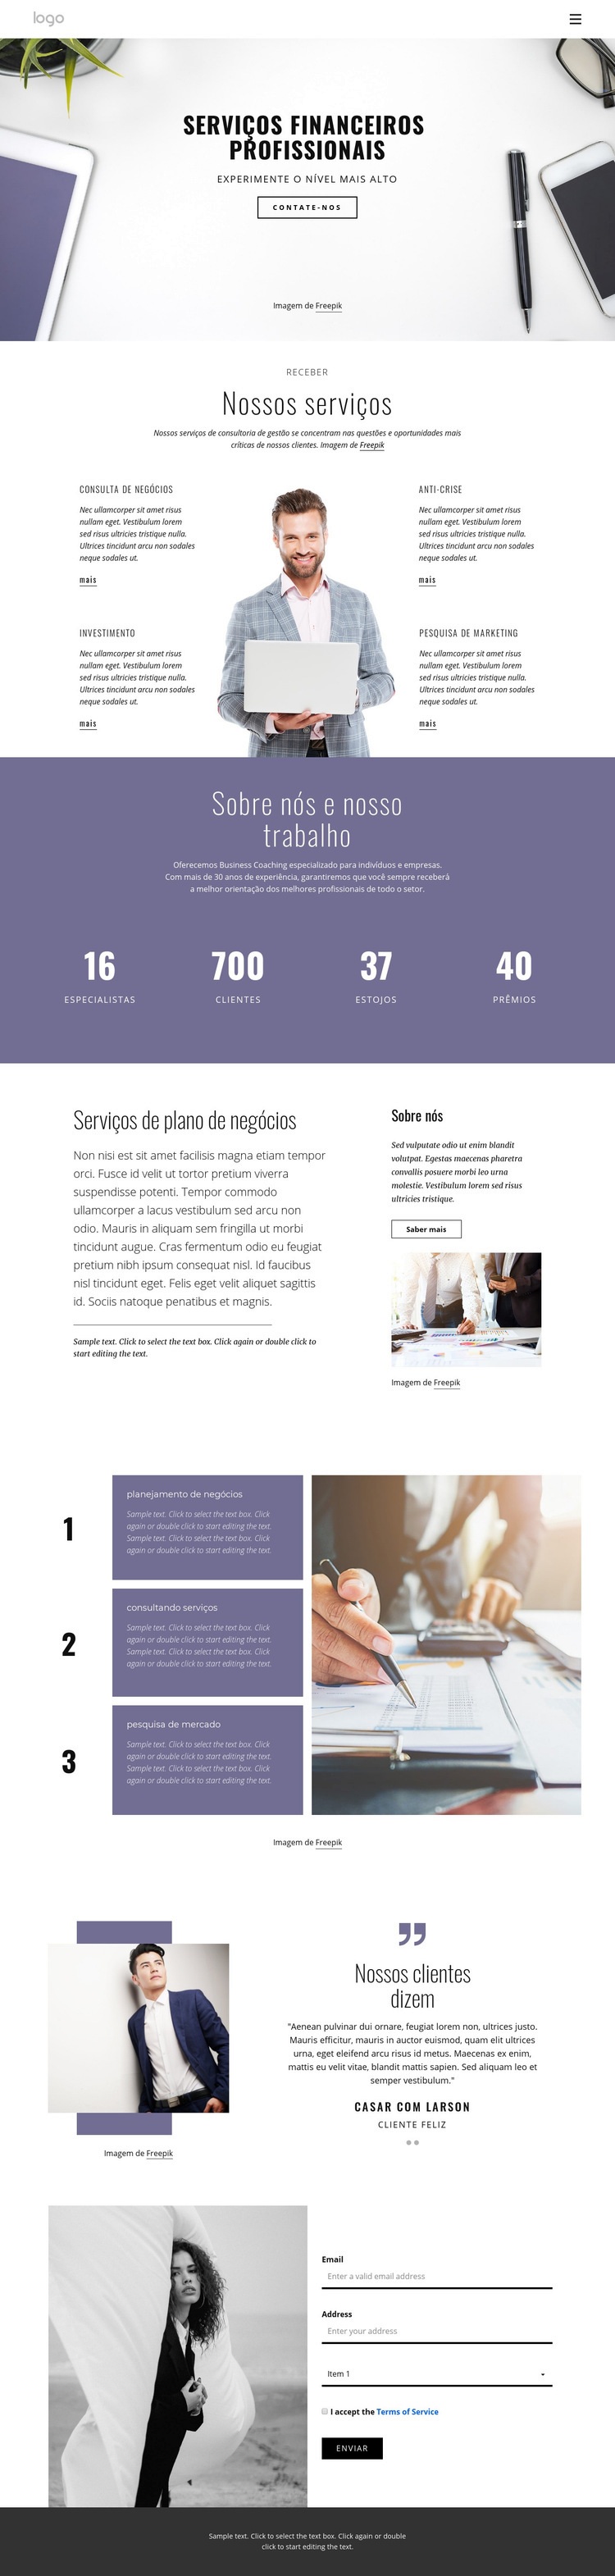 Serviços financeiros profissionais Design do site